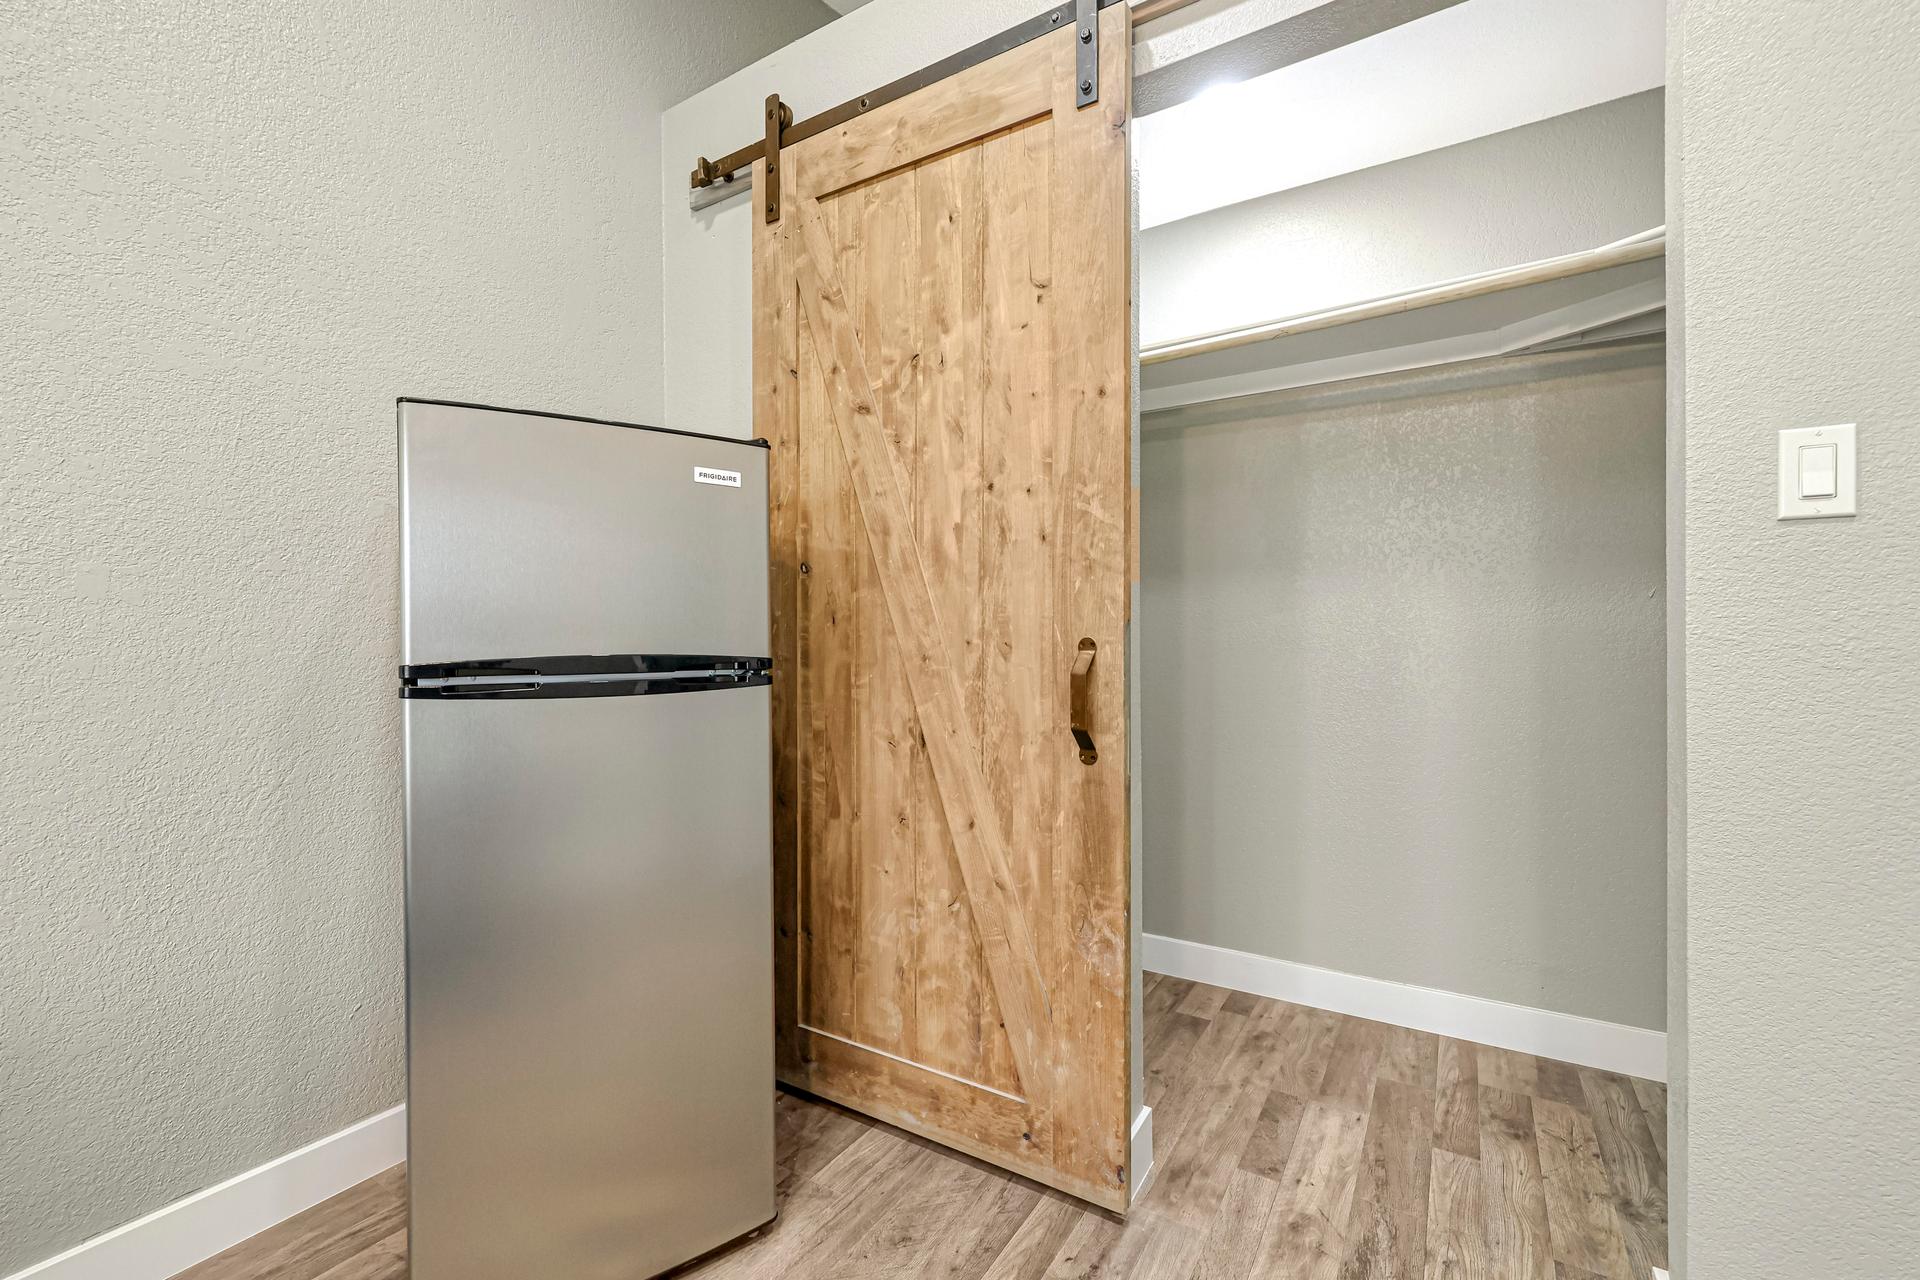 kitchen, detected:refrigerator